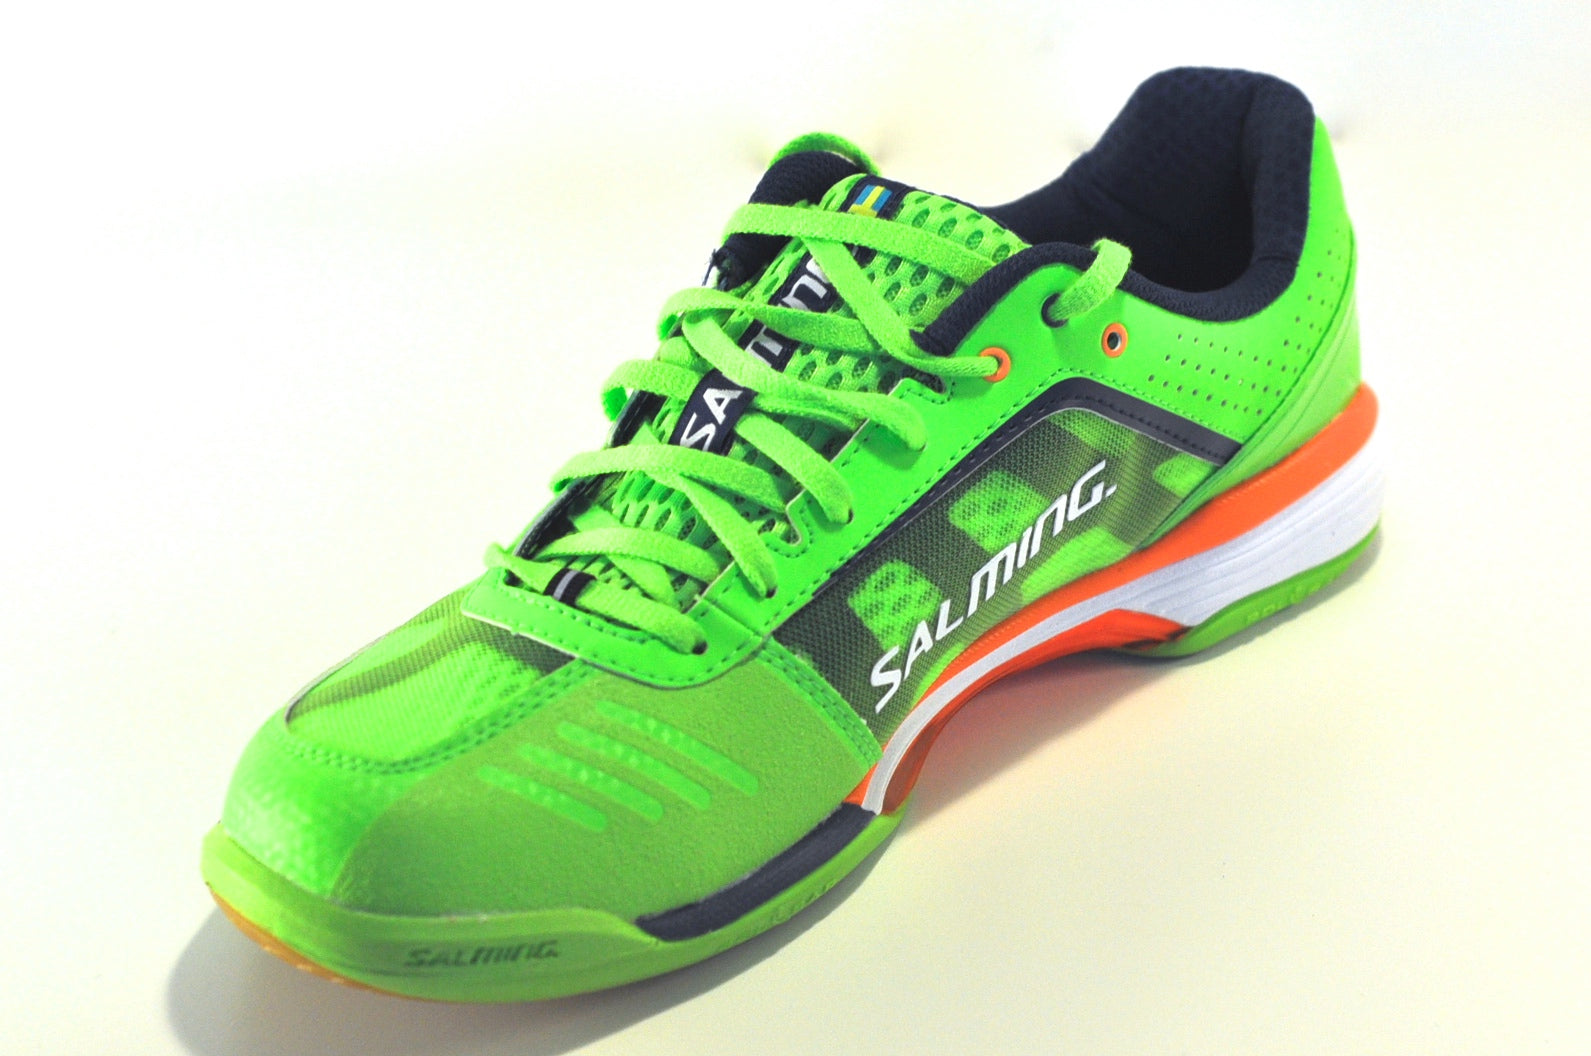 Salming Viper 2.0 Squash shoes